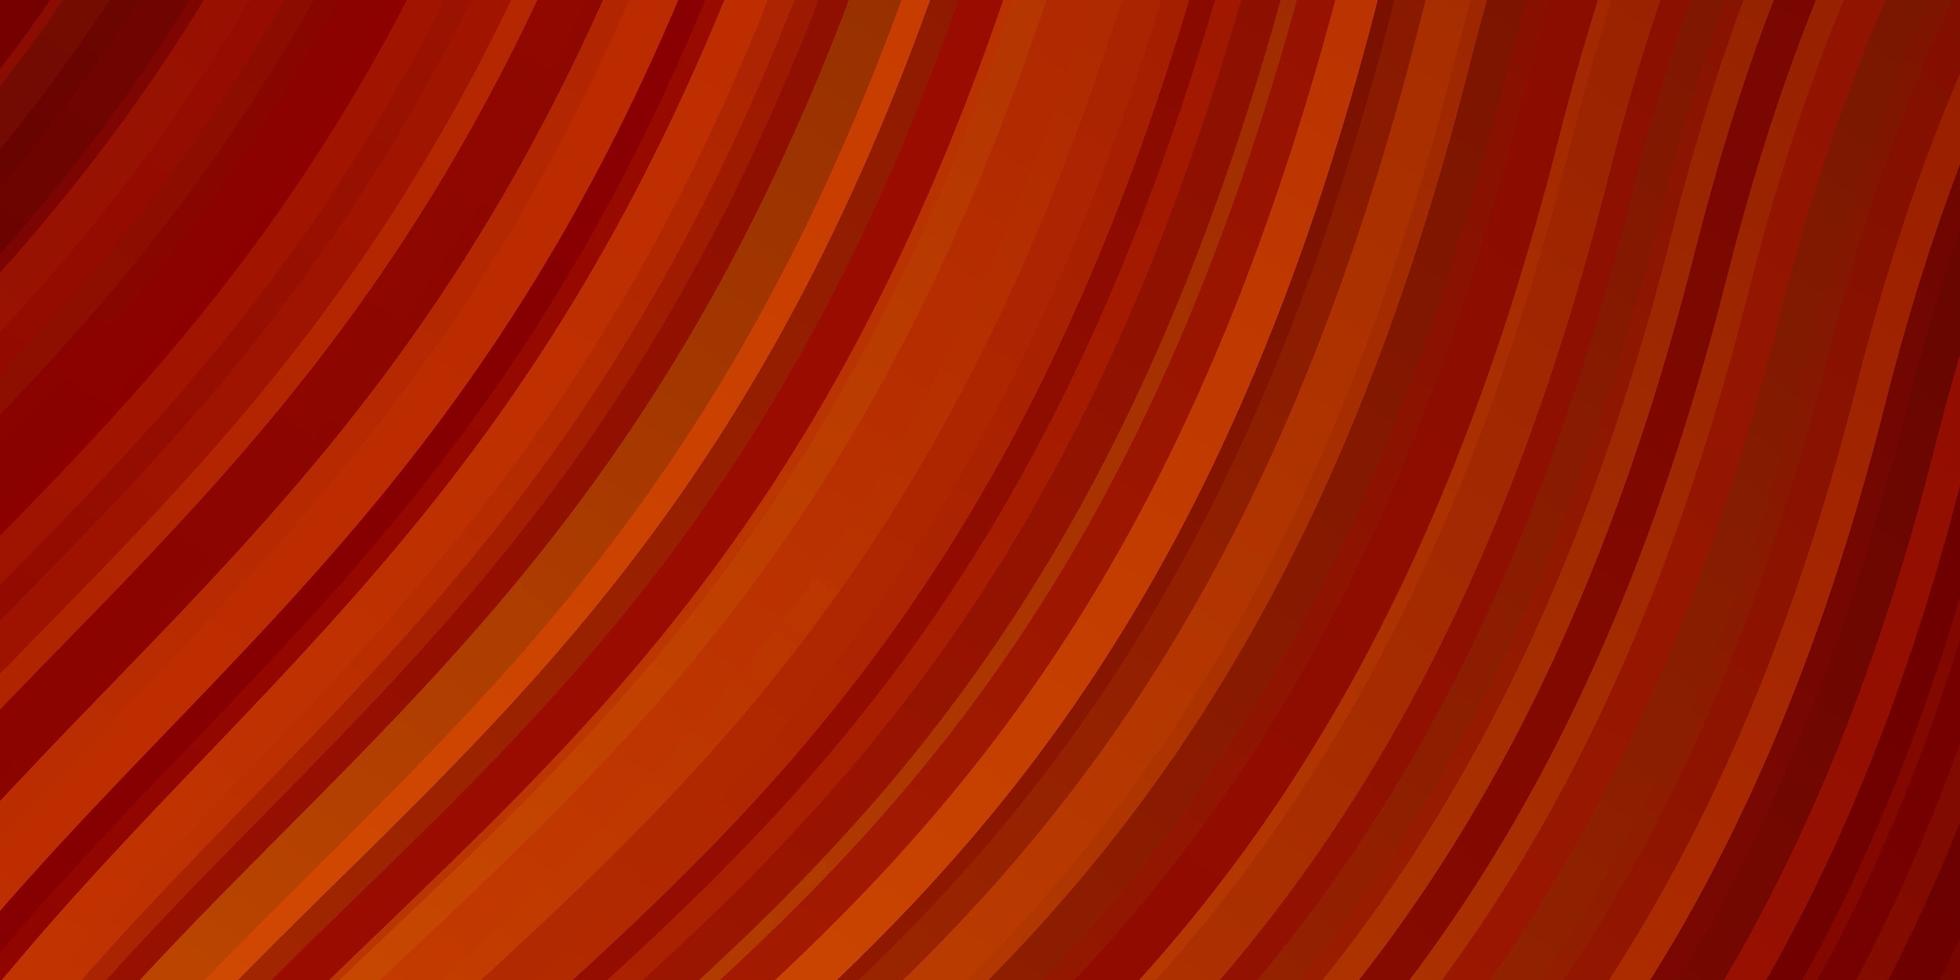 modelo de vetor laranja claro com linhas irônicas.